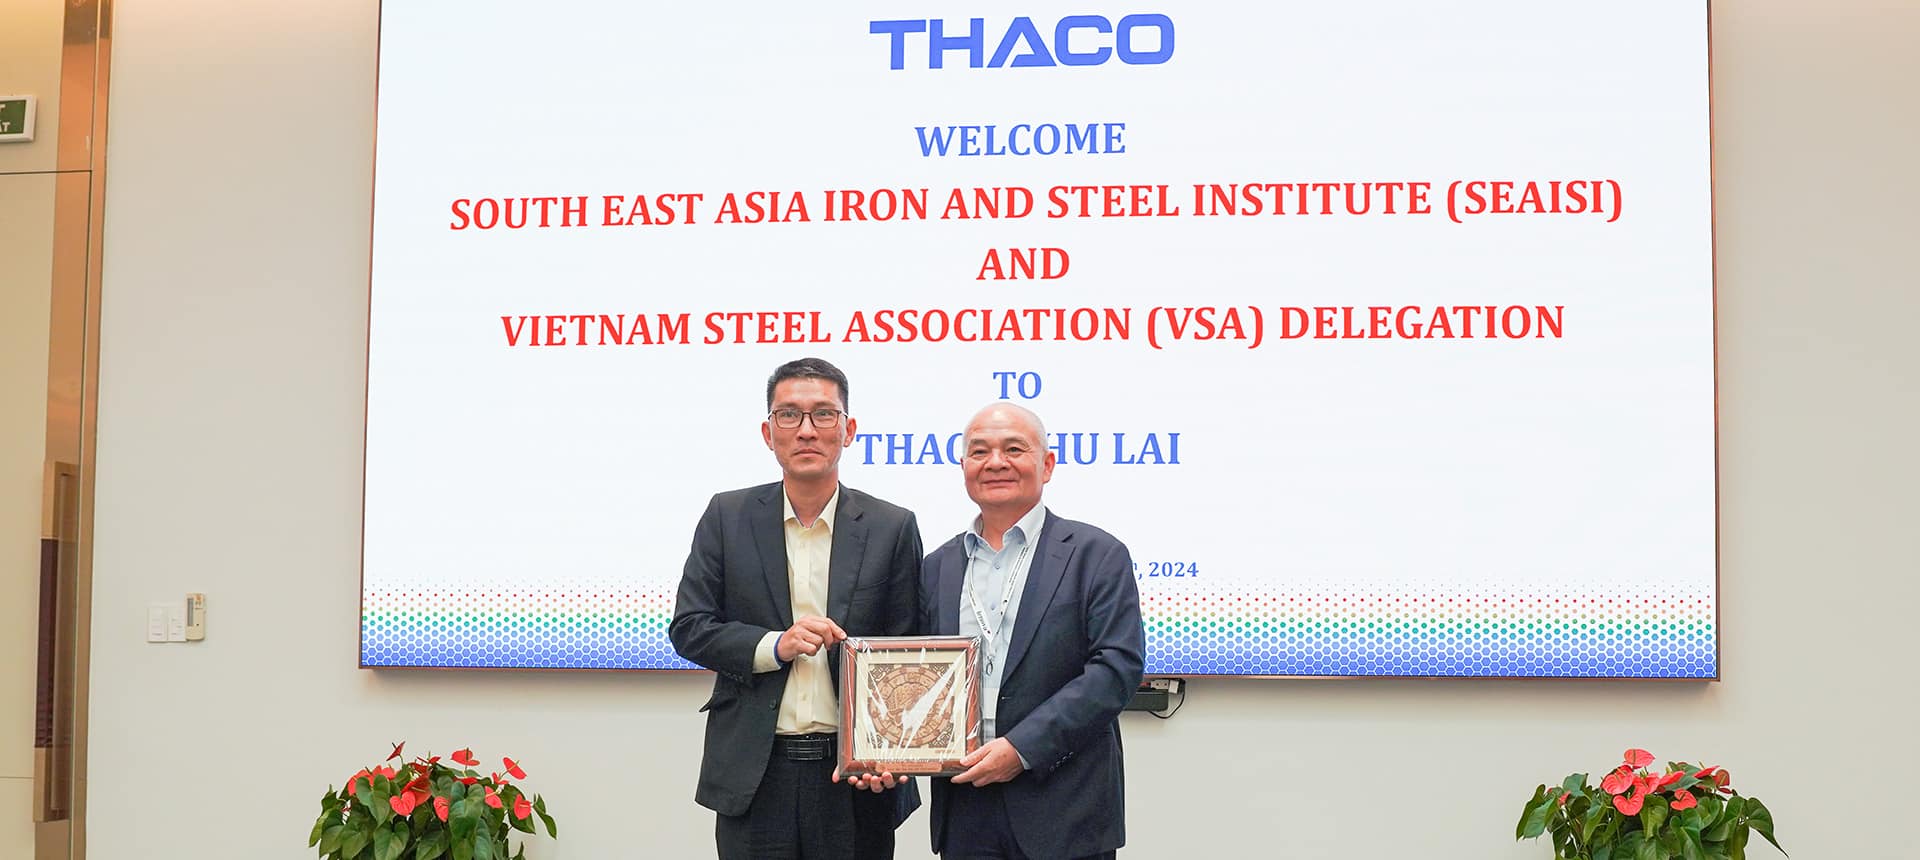 Ông Đỗ Minh Tâm - Tổng Giám đốc THACO INDUSTRIES nhận quà lưu niệm từ ông Đinh Quốc Thái - Tổng thư ký VSA